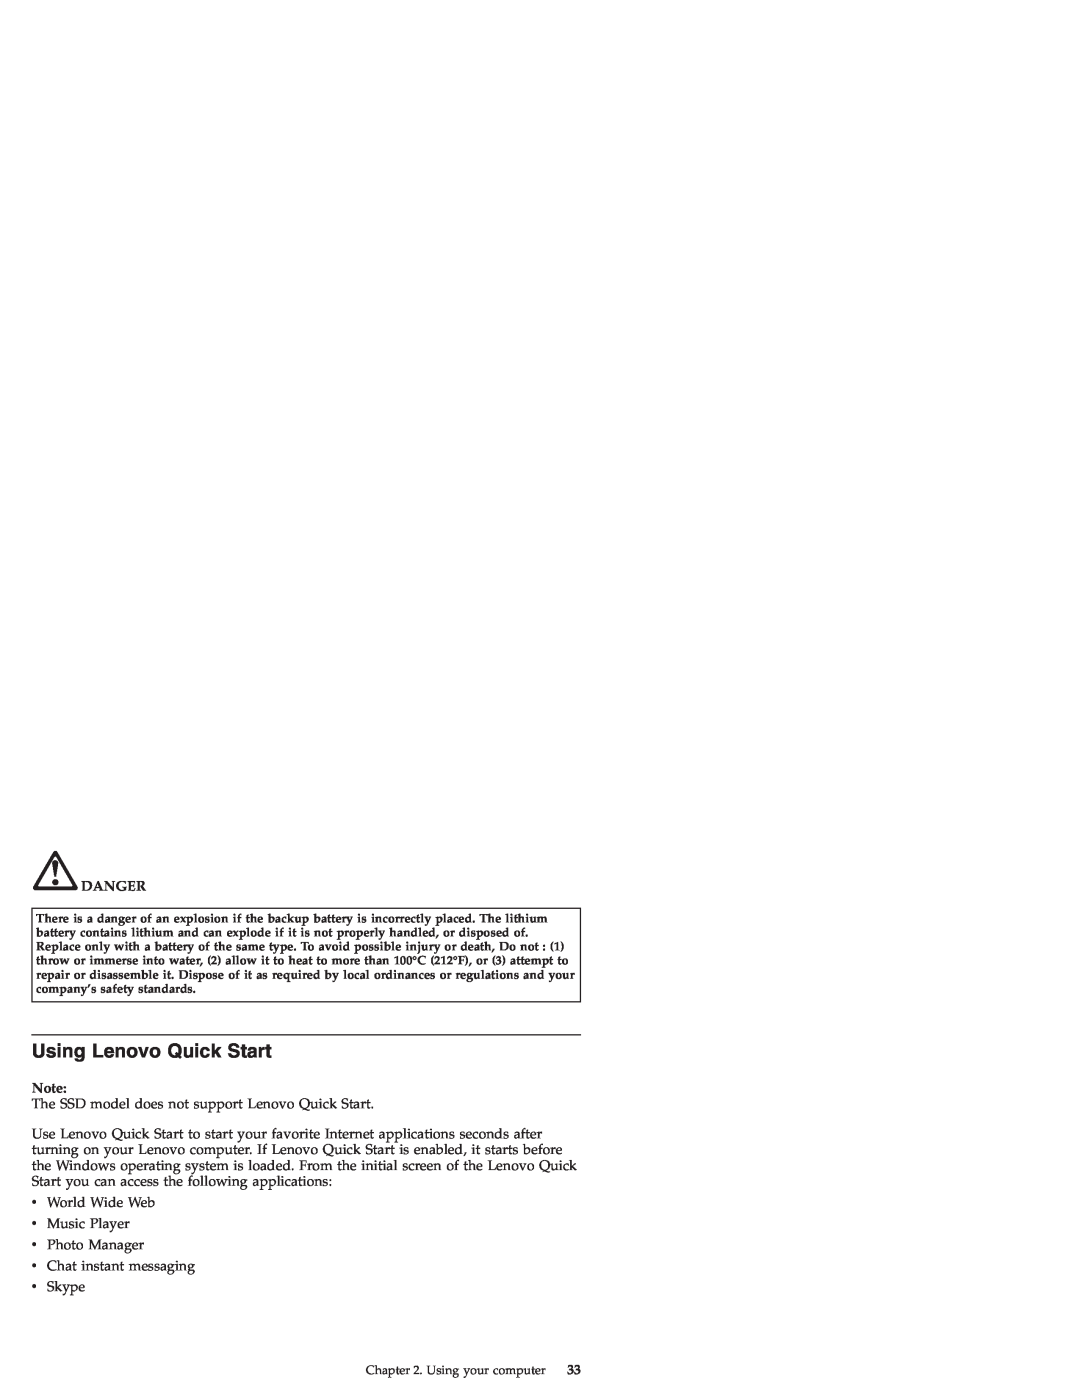 Lenovo S9E, S10E manual Using Lenovo Quick Start, Danger 